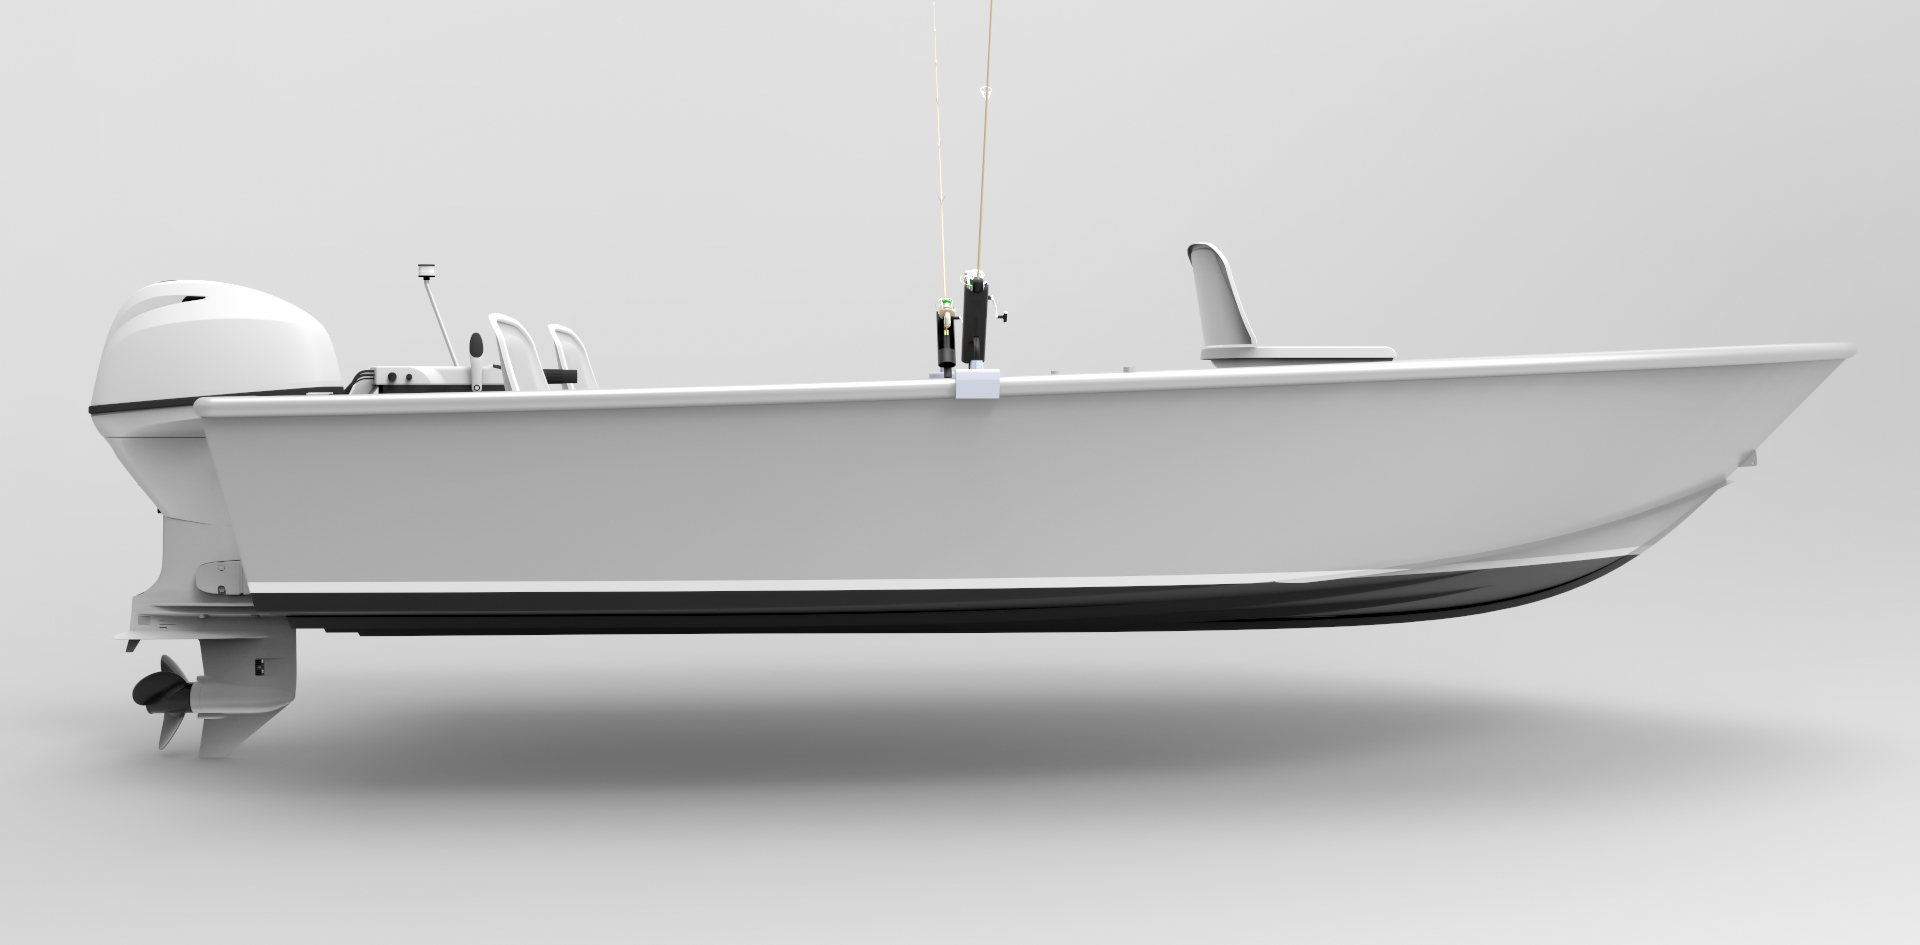 14 Foot (4.3m) Skiff - Sport Fish - Metal Boat Kits